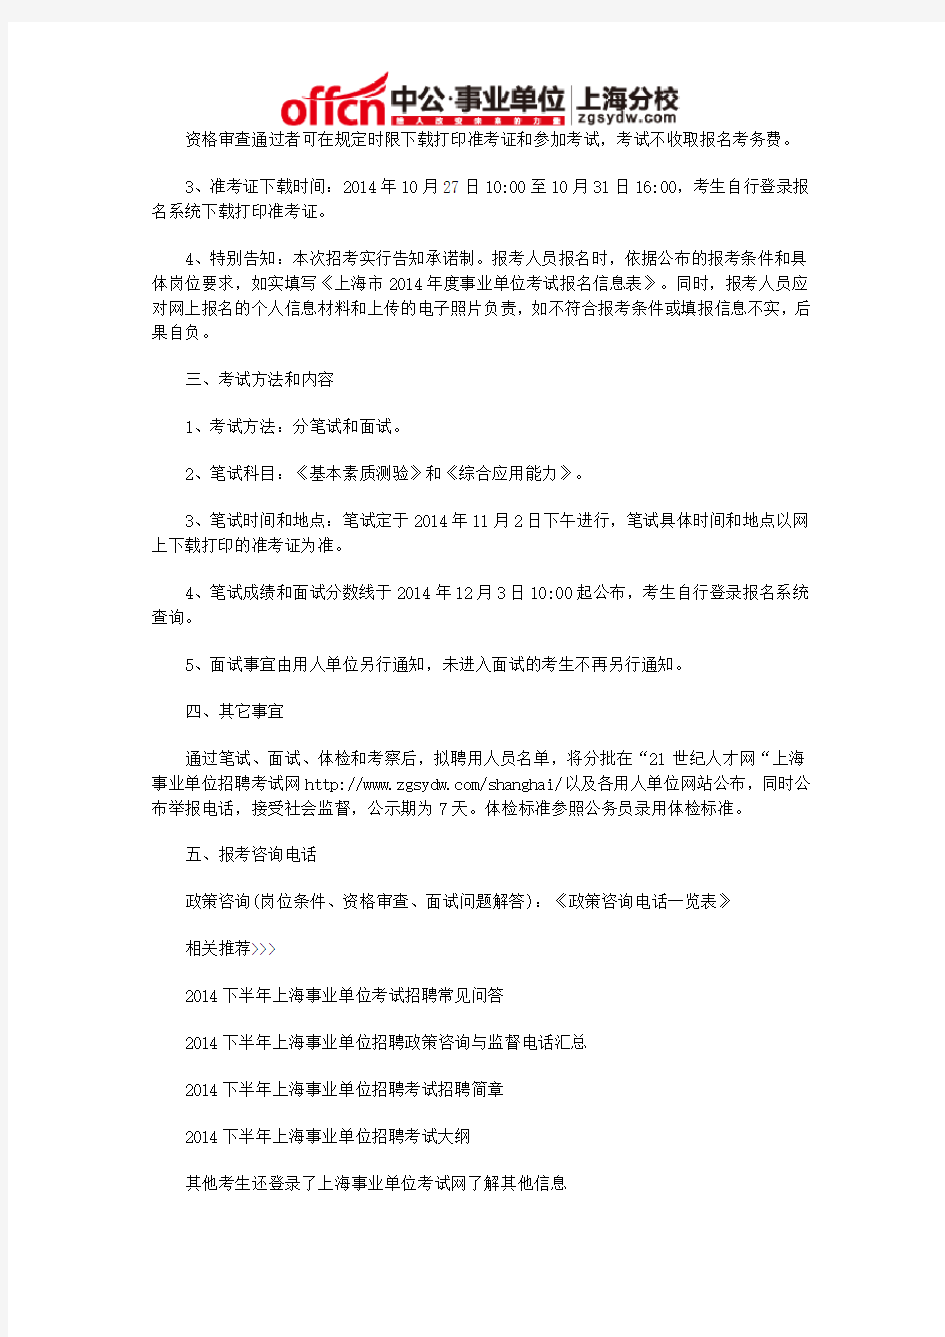 2015下半年上海事业单位招聘考试公告